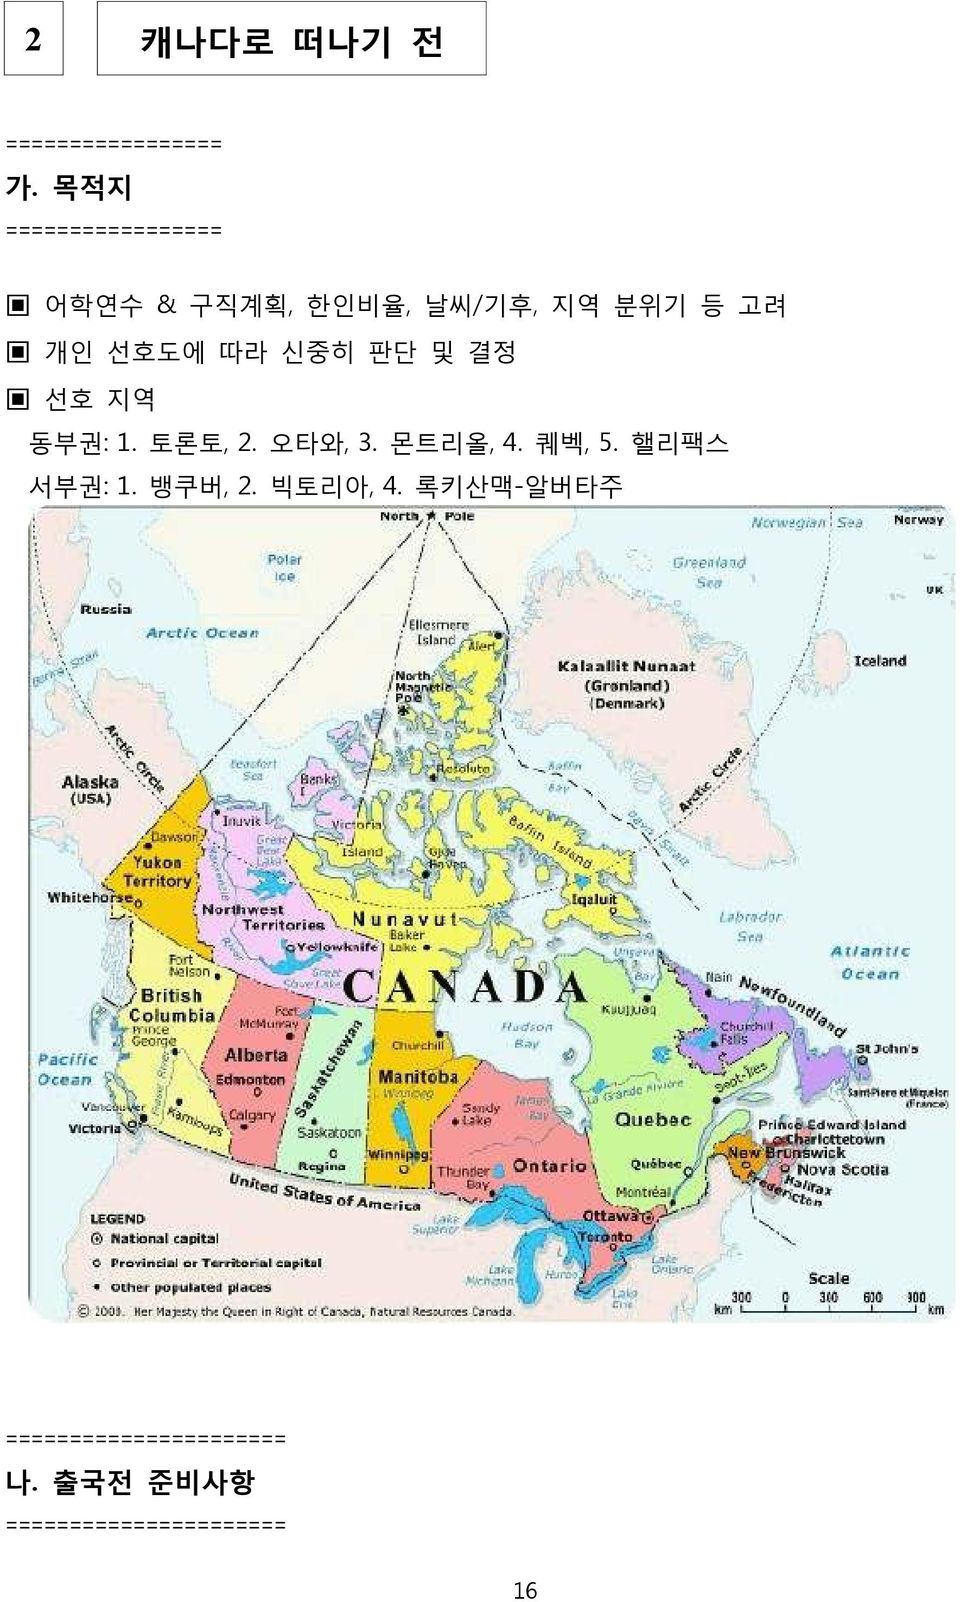 선호도에 따라 신중히 판단 및 결정 선호 지역 동부권: 1. 토론토, 2. 오타와, 3. 몬트리올, 4. 퀘벡, 5.